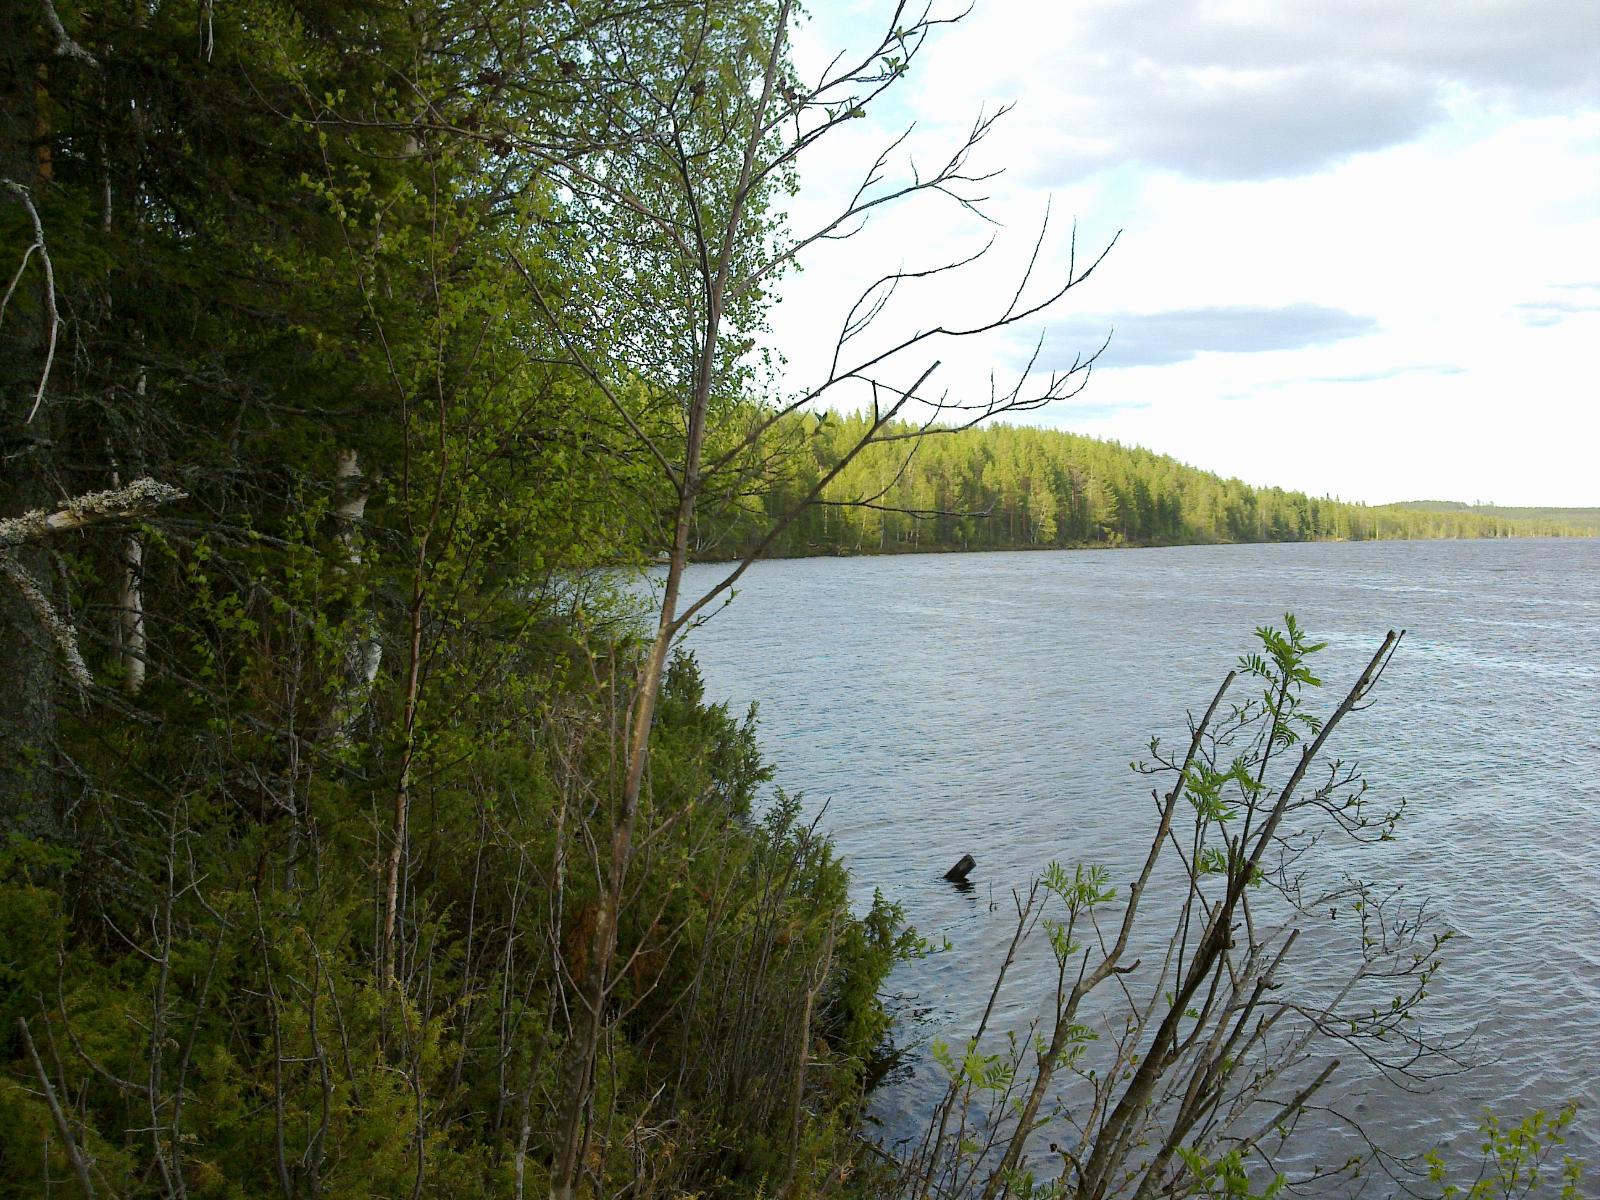 Kesäinen sekametsä reunustaa järveä oikealle kaartuvassa rantaviivassa.